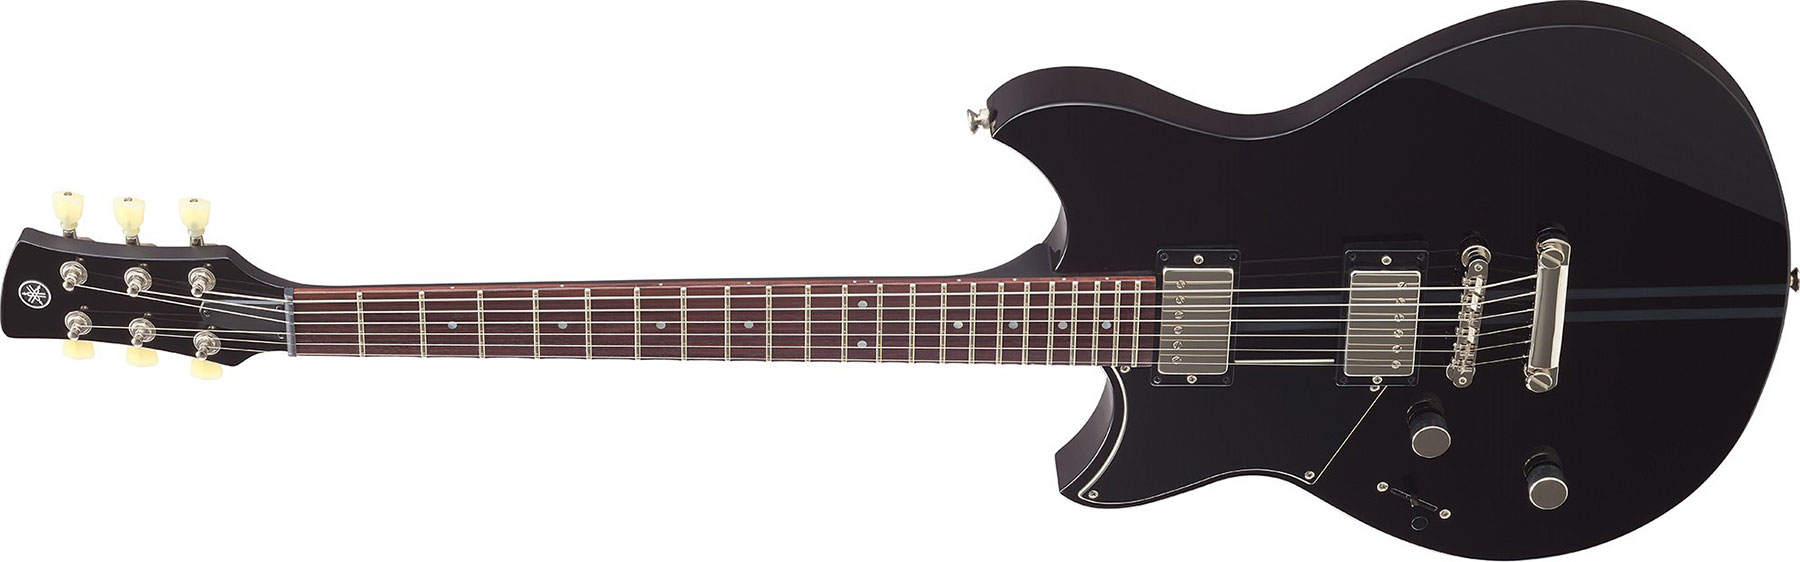 Yamaha Rse20l Revstar Element Lh Gaucher Hh Ht Rw - Black - Linkshandige elektrische gitaar - Variation 1